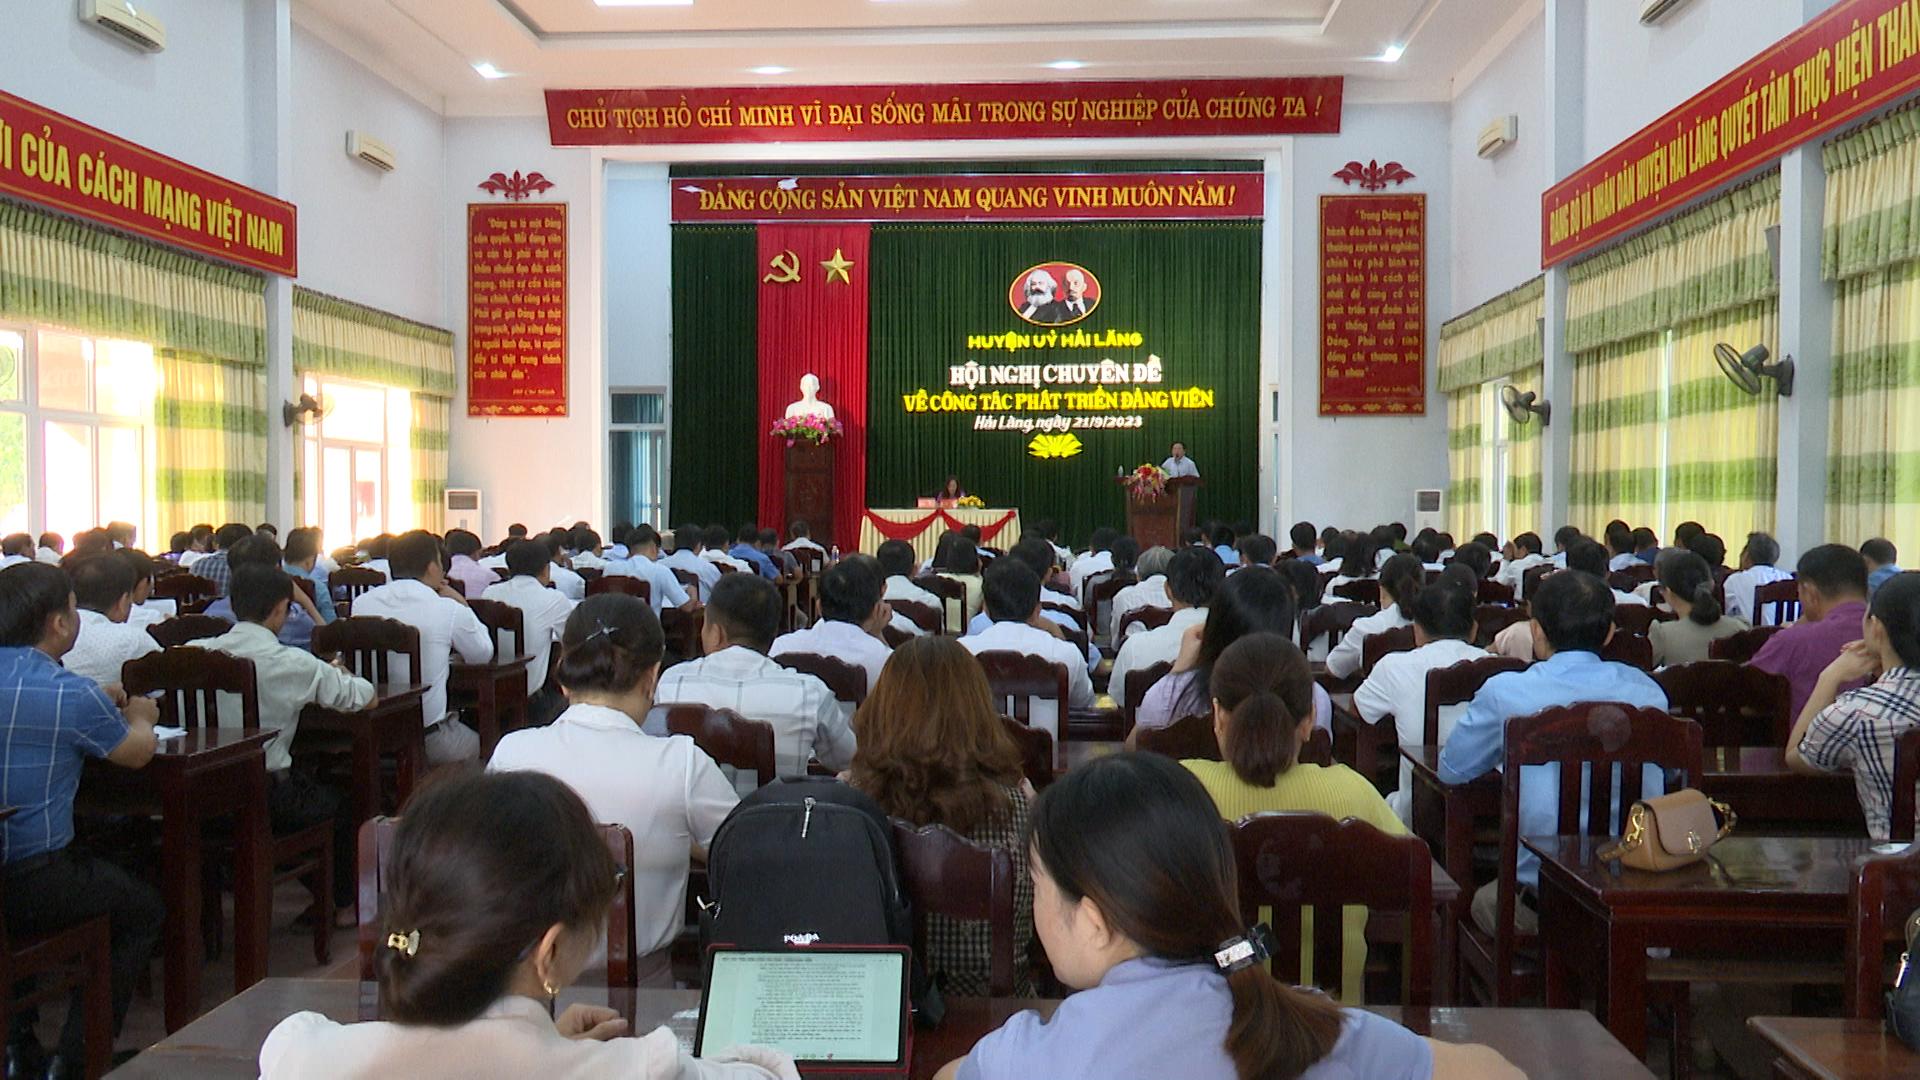 Huyện ủy Hải Lăng tổ chức Hội nghị Chuyên đề về công tác phát triển đảng viên trong tình hình mới.